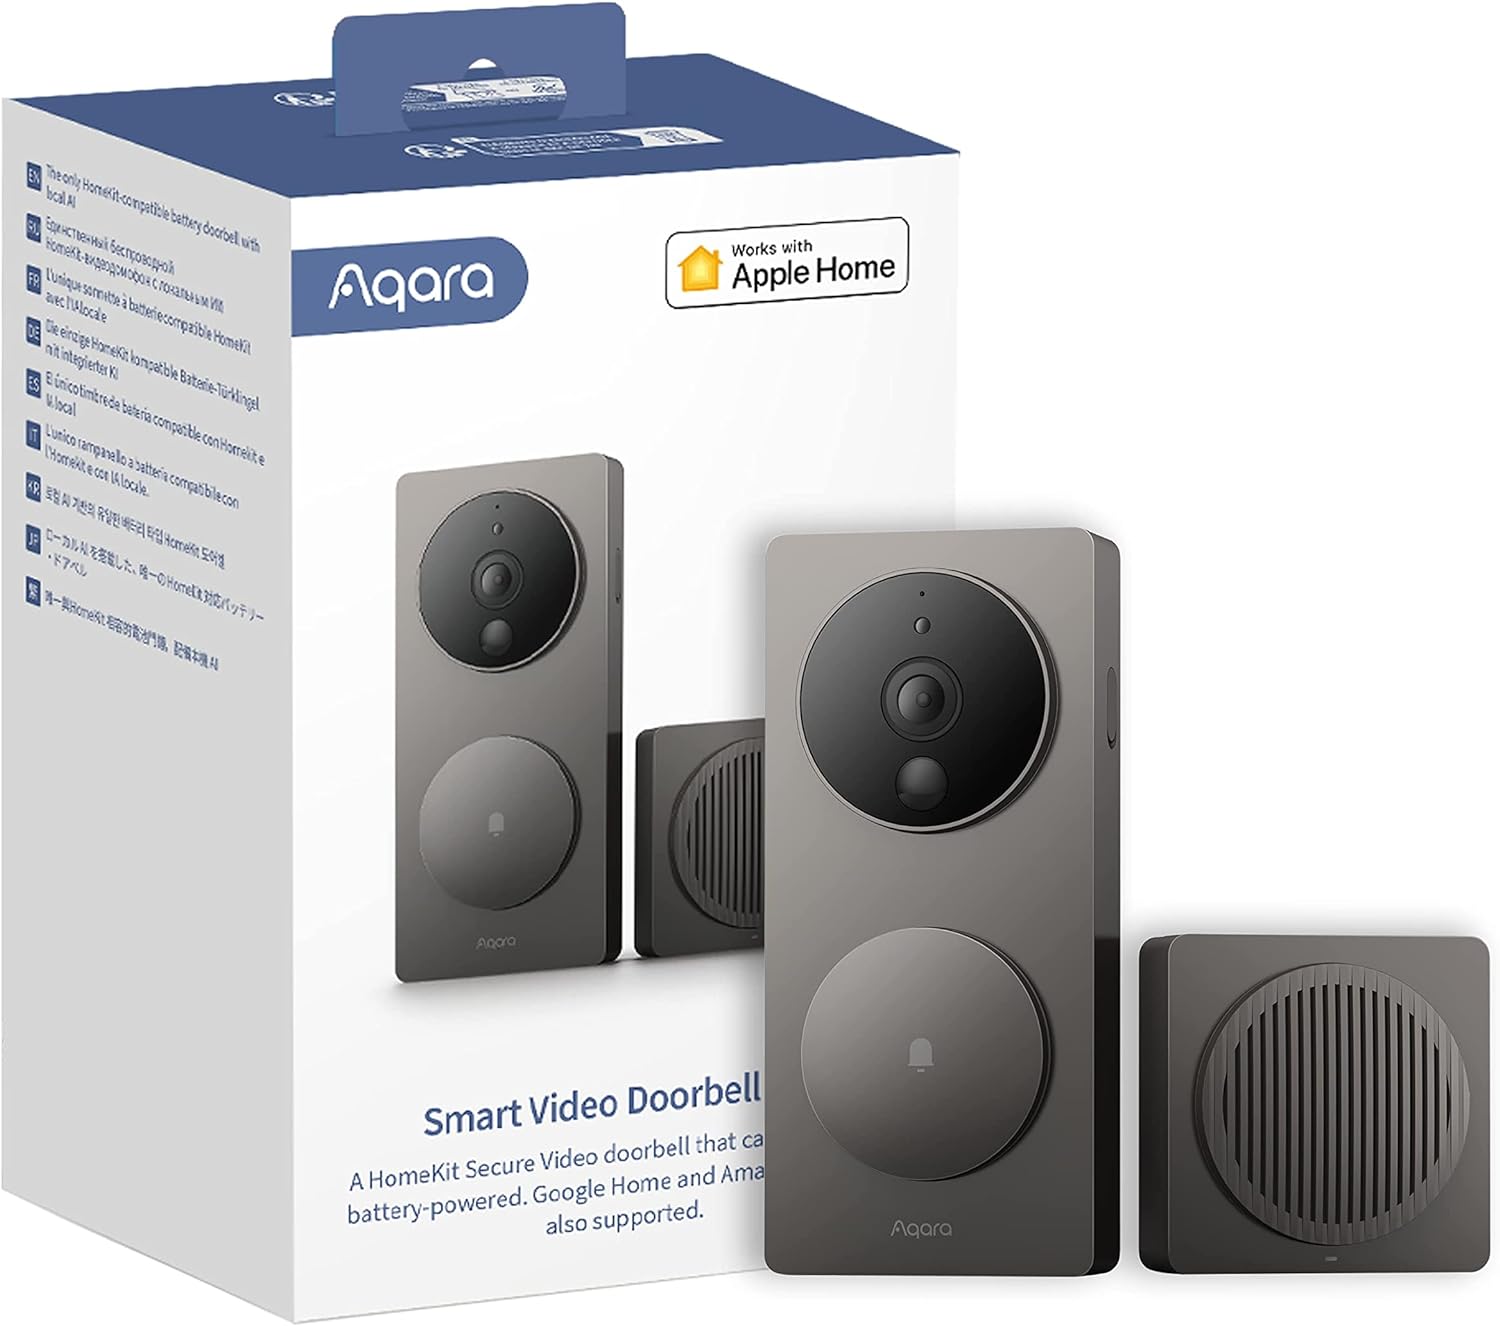 Aqara video doorbell g4